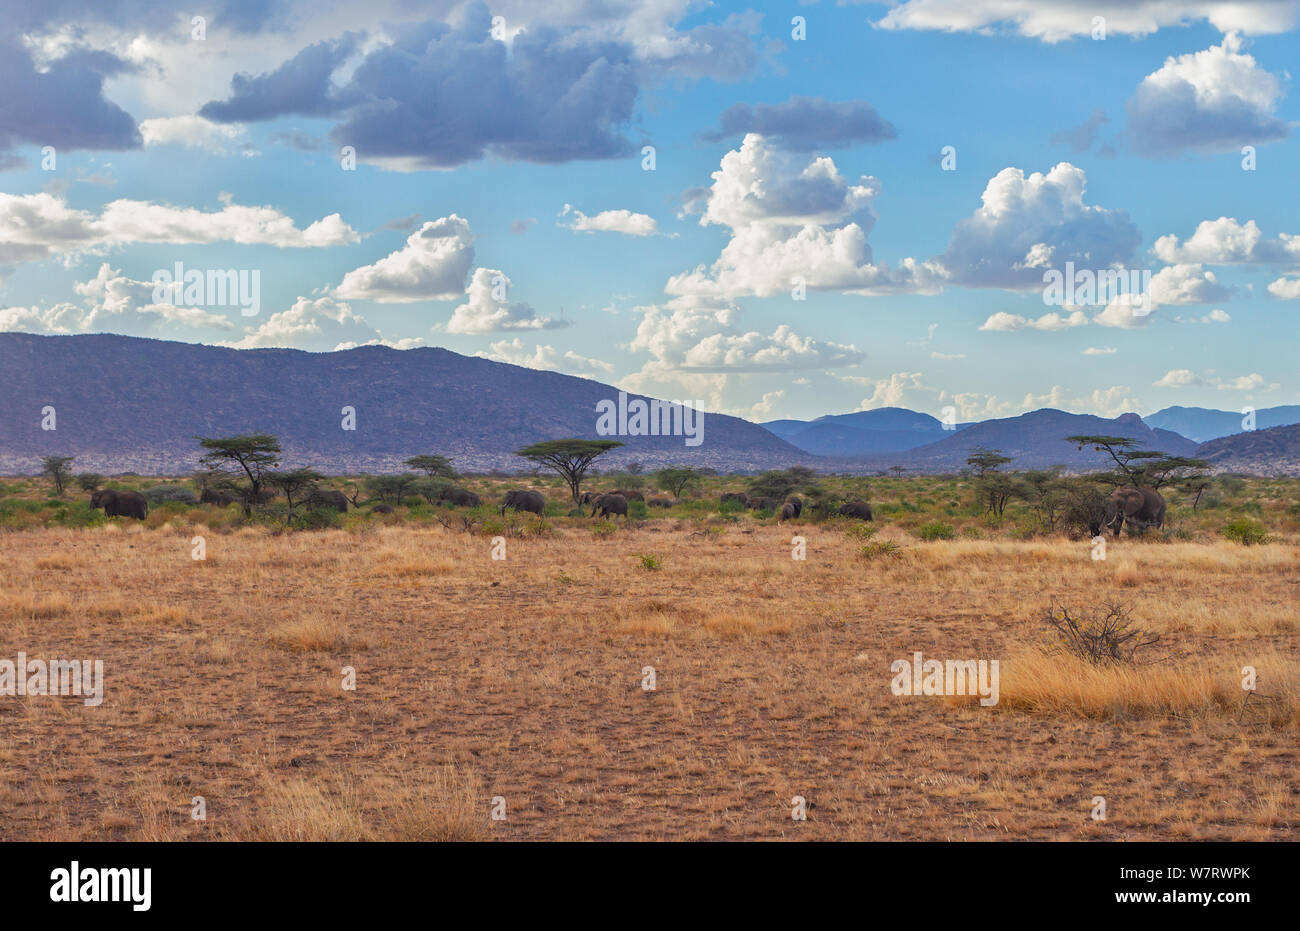 Samburu finden Landschaft mit Elefanten Herde unter dem Dach Akazien und riesigen blauen afrikanischen Himmel und die Berge in der Ferne. Samburu National Reserve Stockfoto